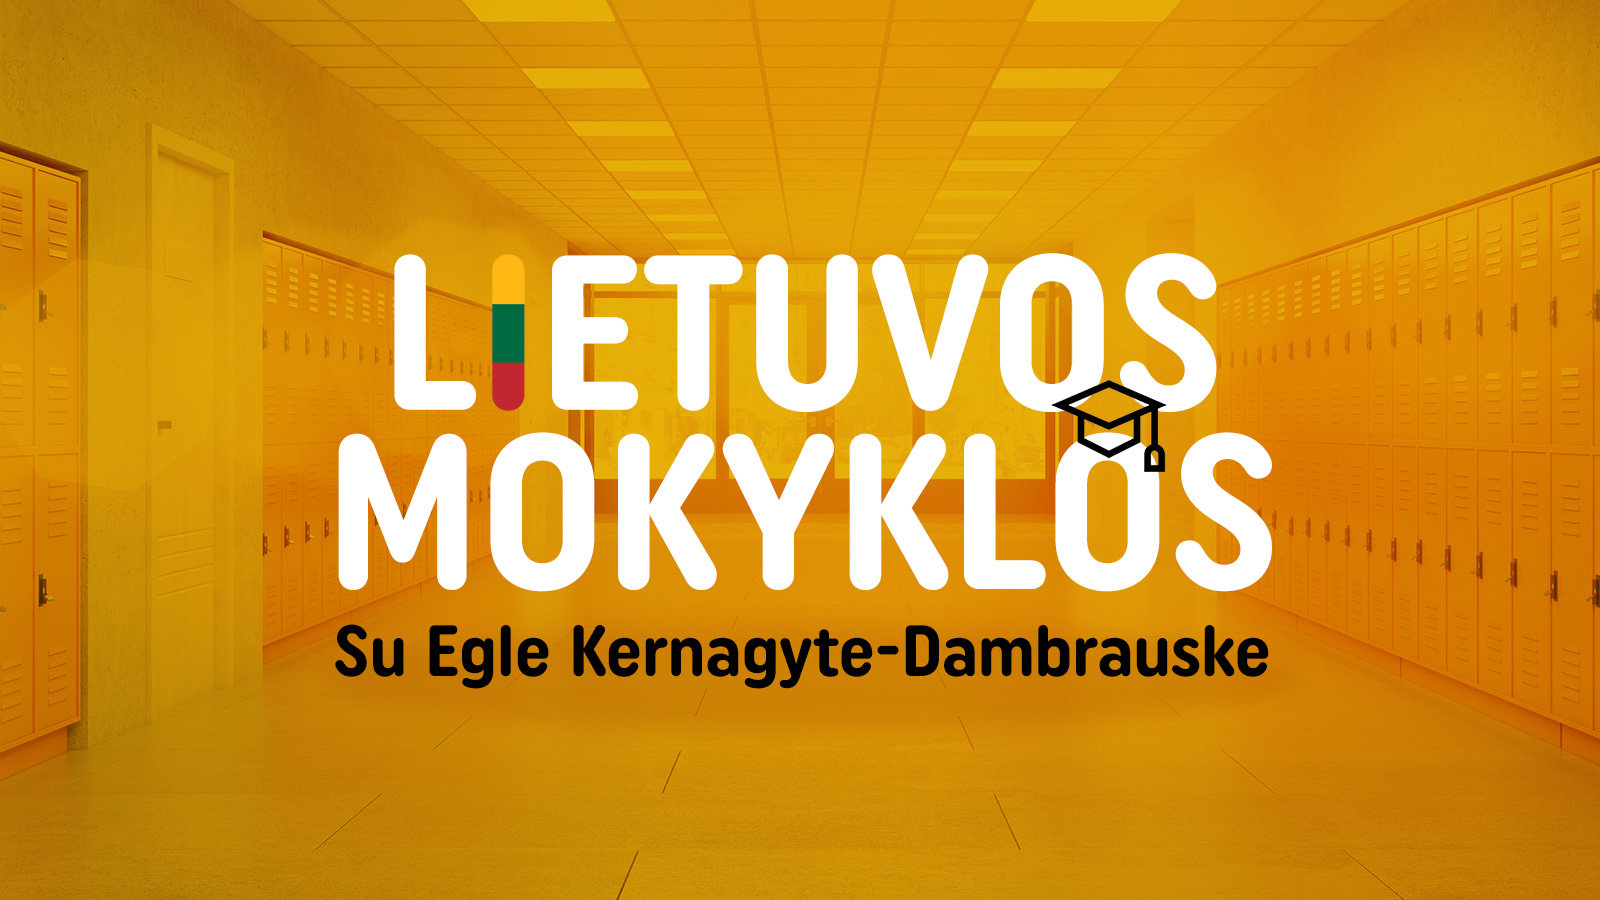 Televizijos laidų ciklas „Lietuvos mokyklos“ su vedėja Egle Kernagyte–Dambrauske pasakoja skirtingų mokyklų bei jų auklėtinių istorijas.